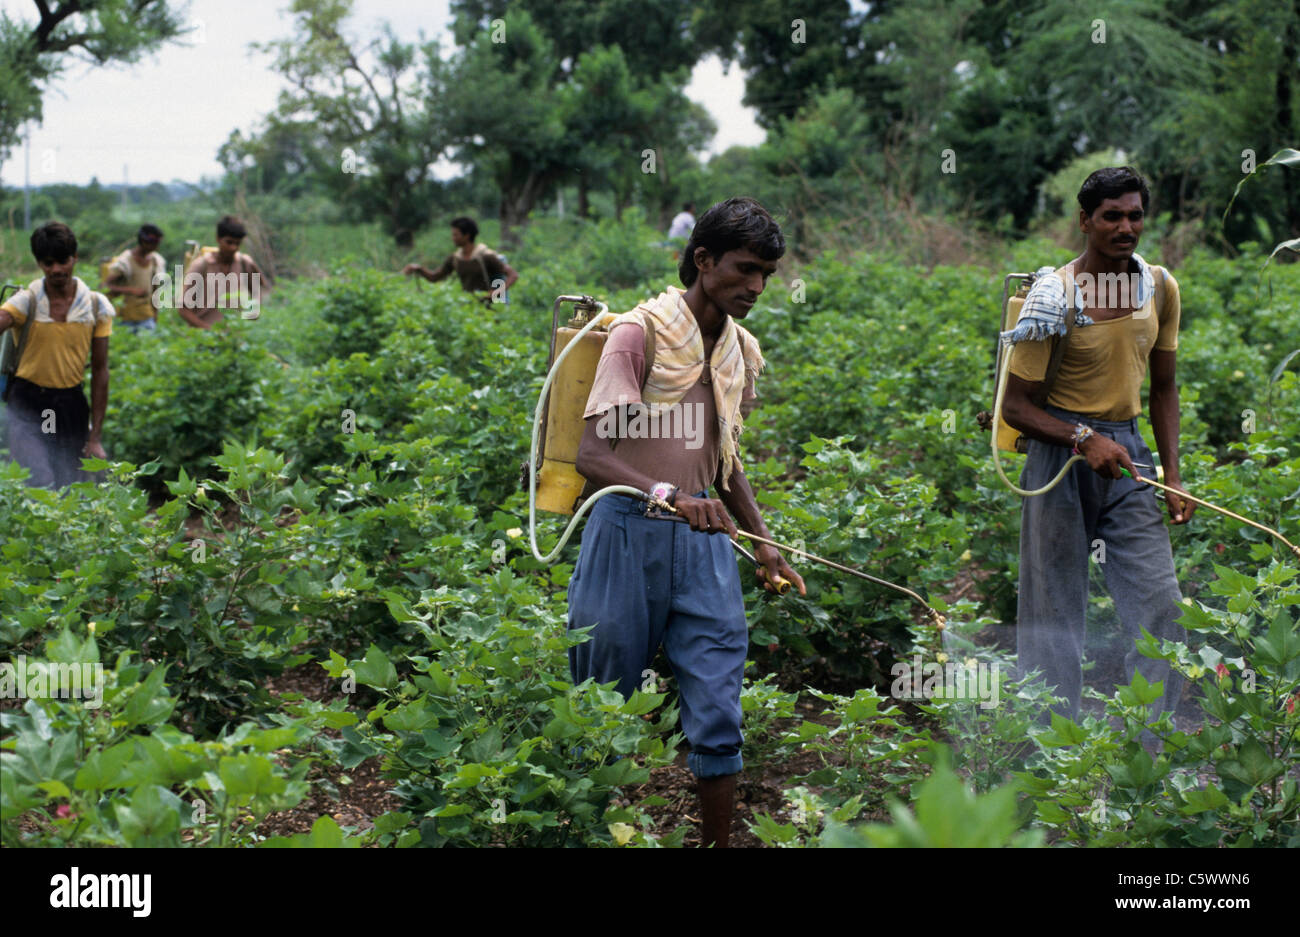 La India de Madhya Pradesh , trabajador de granja rociar pesticida químico herbicida cóctel en el campo de algodón Bt modificado gen contra plagas como el gusano y la cizaña Foto de stock